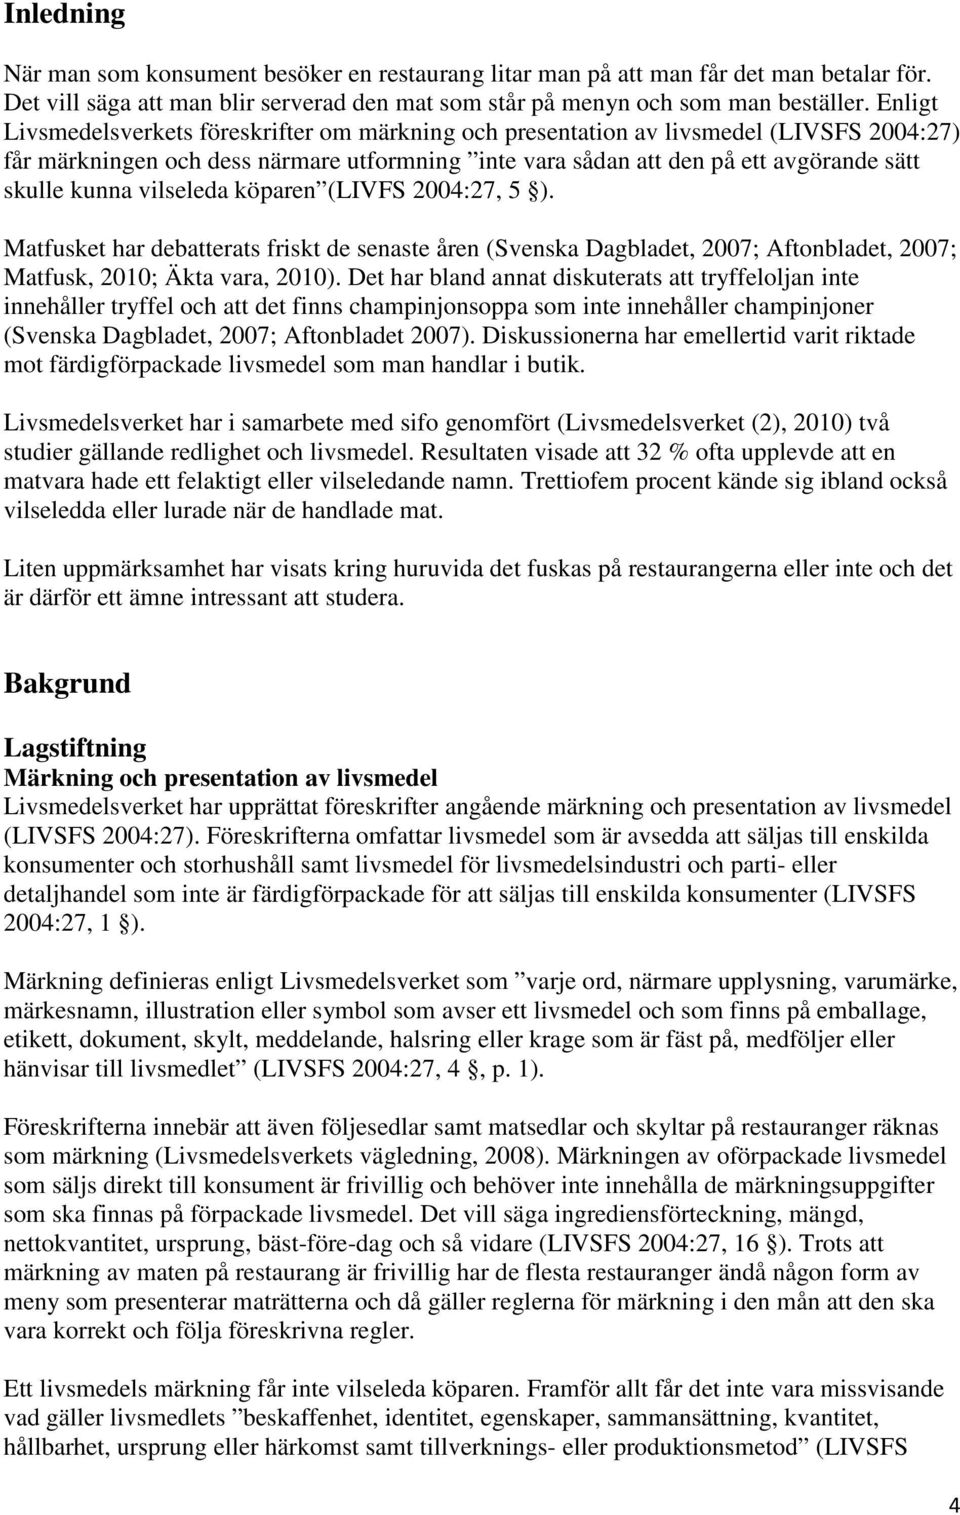 vilseleda köparen (LIVFS 2004:27, 5 ). Matfusket har debatterats friskt de senaste åren (Svenska Dagbladet, 2007; Aftonbladet, 2007; Matfusk, 2010; Äkta vara, 2010).